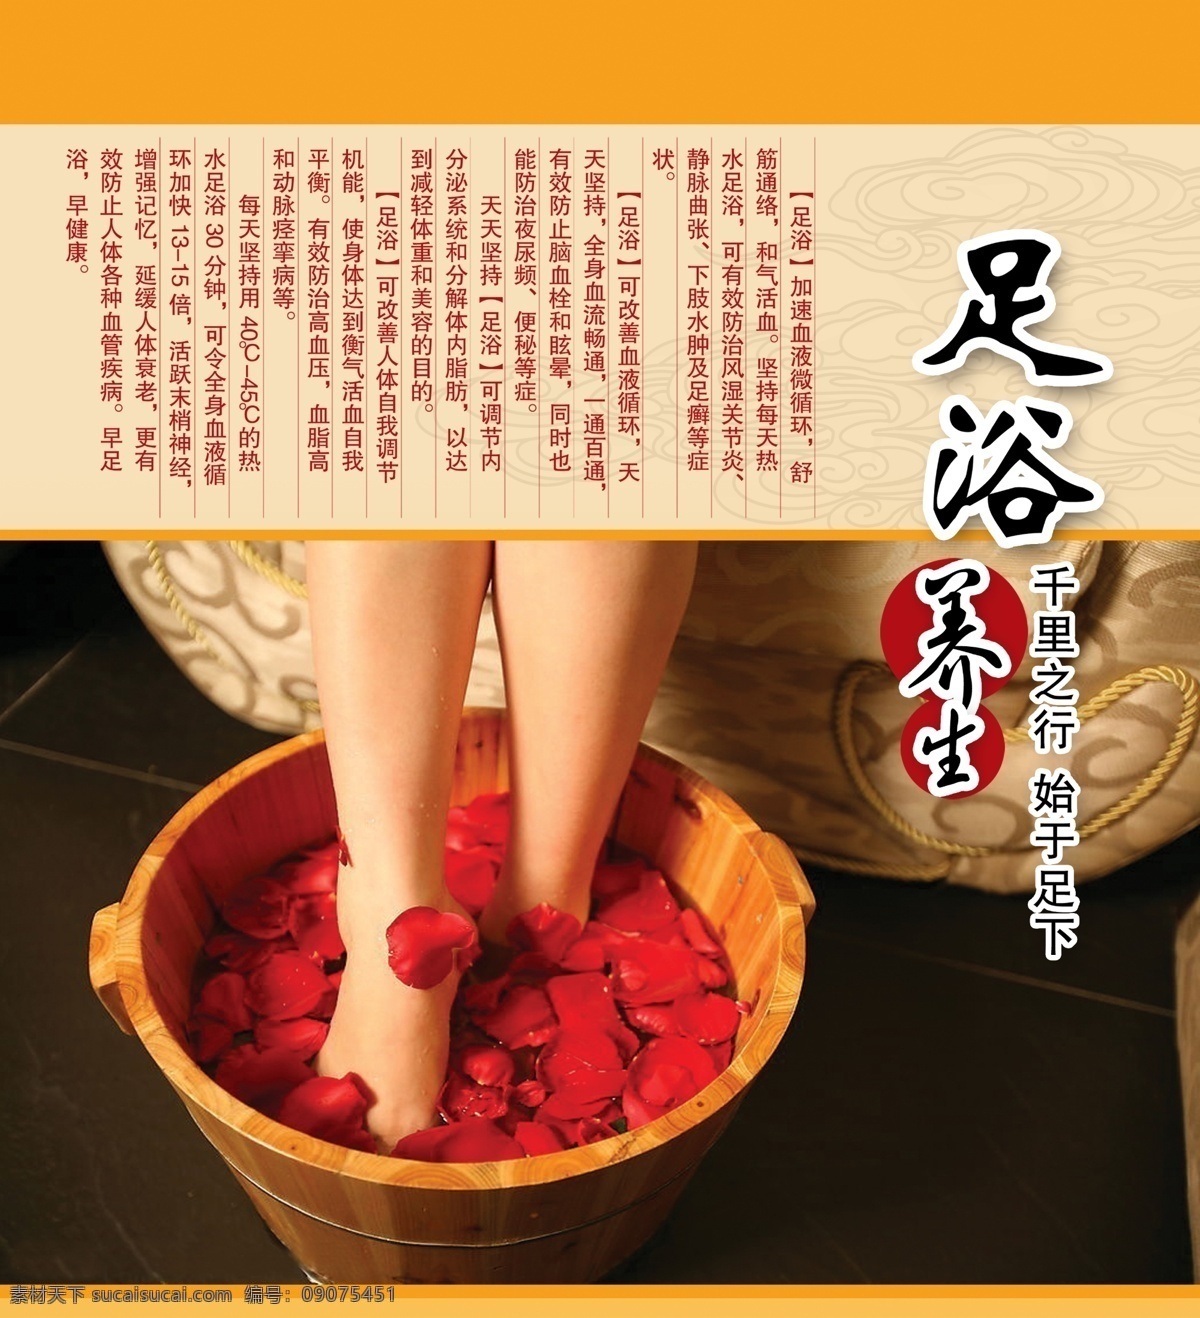 足浴 店 广告宣传 中文字 双脚 盆子 红花 沙发 花纹 边框 国内广告设计 广告设计模板 源文件